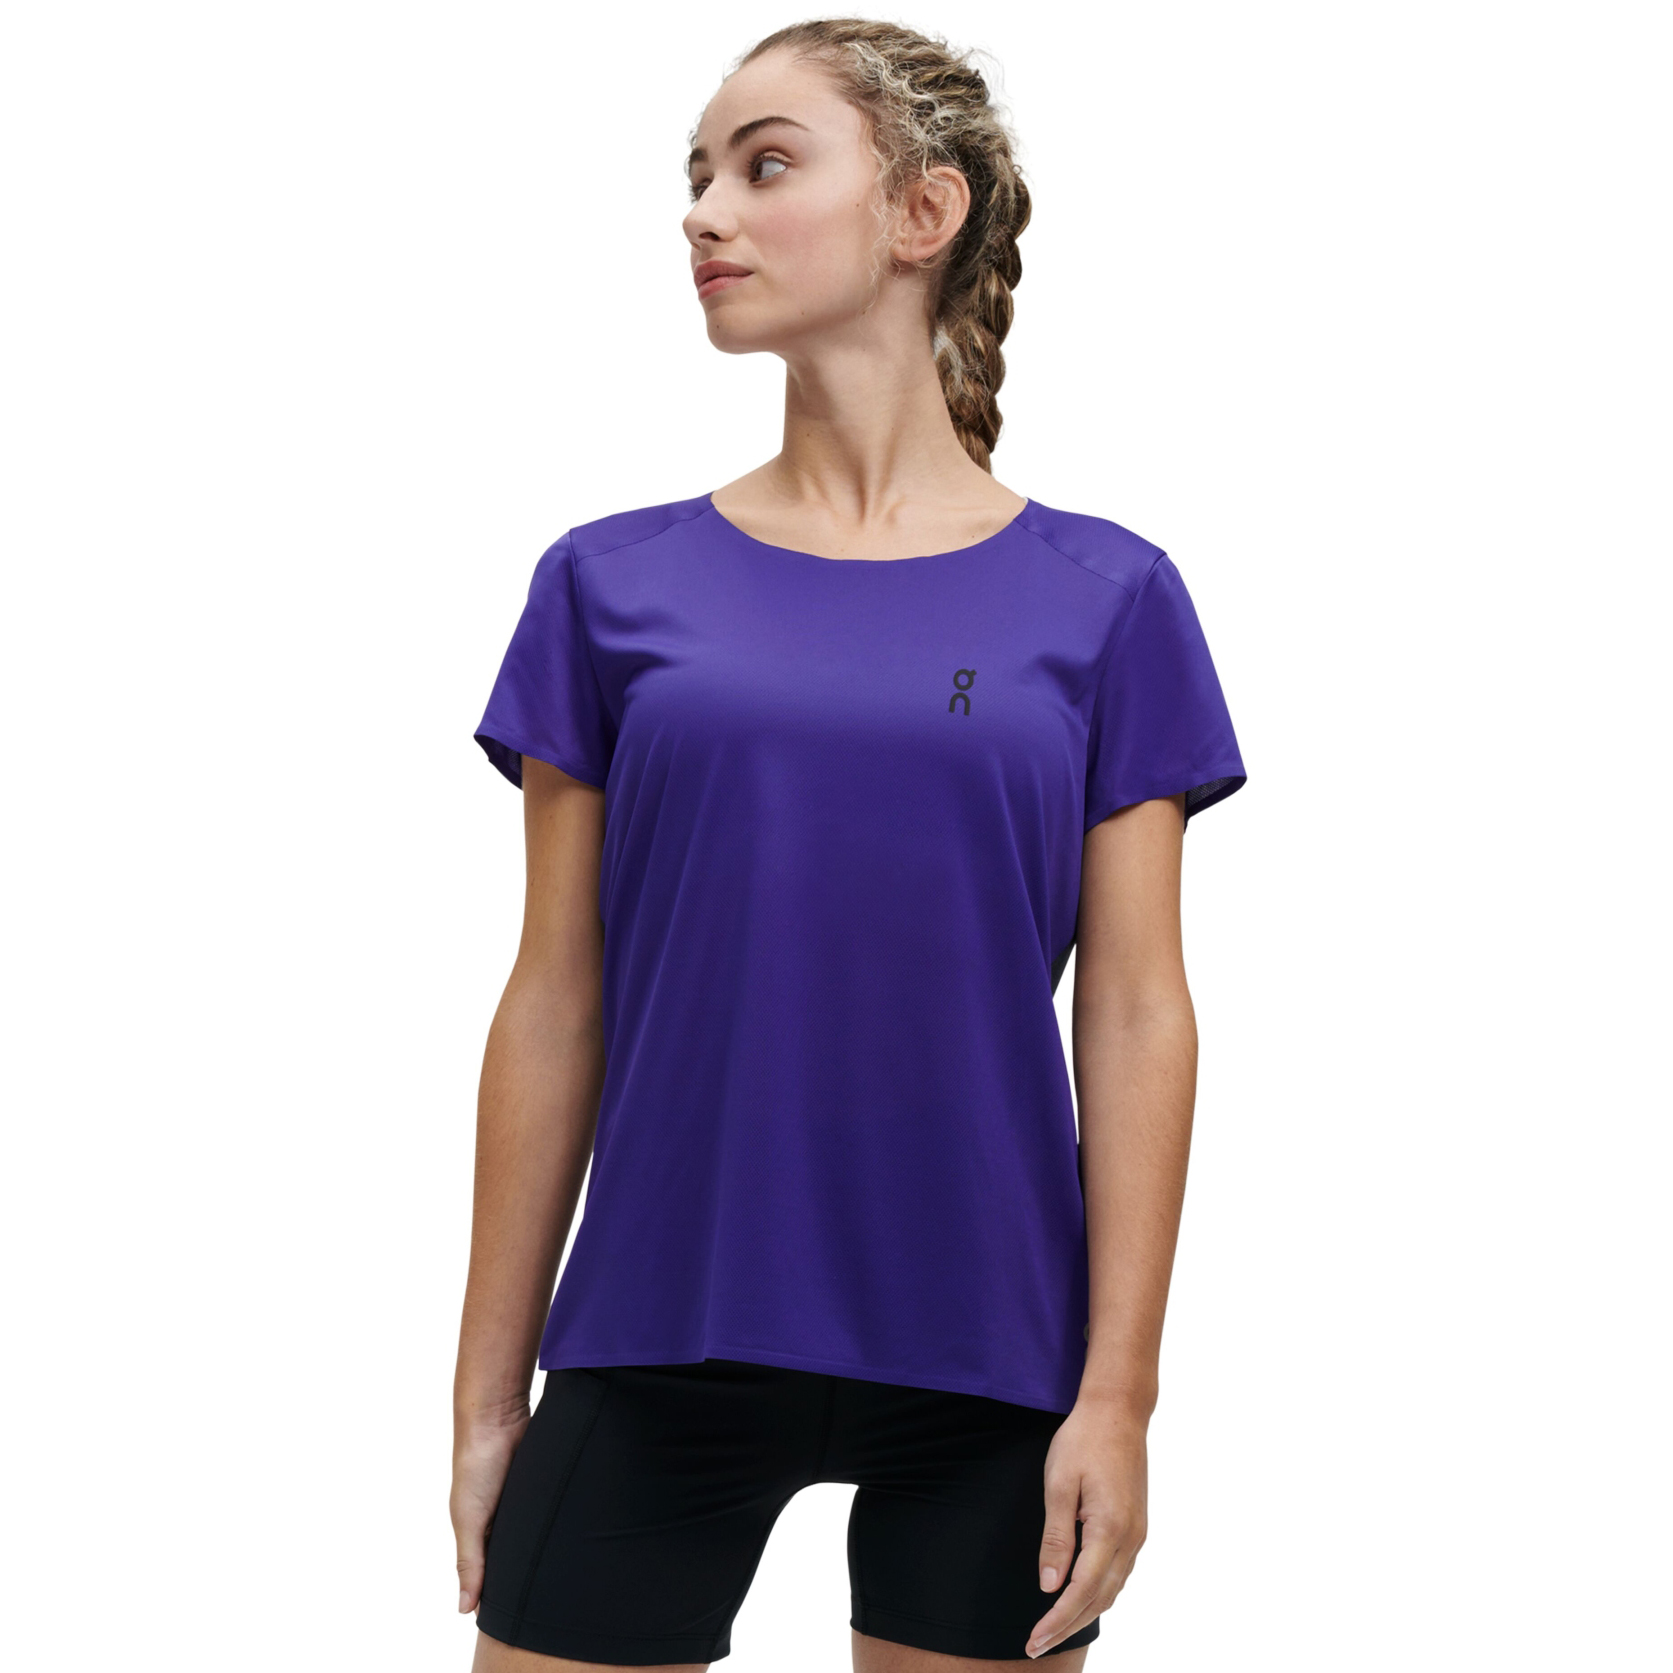 Produktbild von On Performance-T Damen Laufshirt - Twilight &amp; Navy